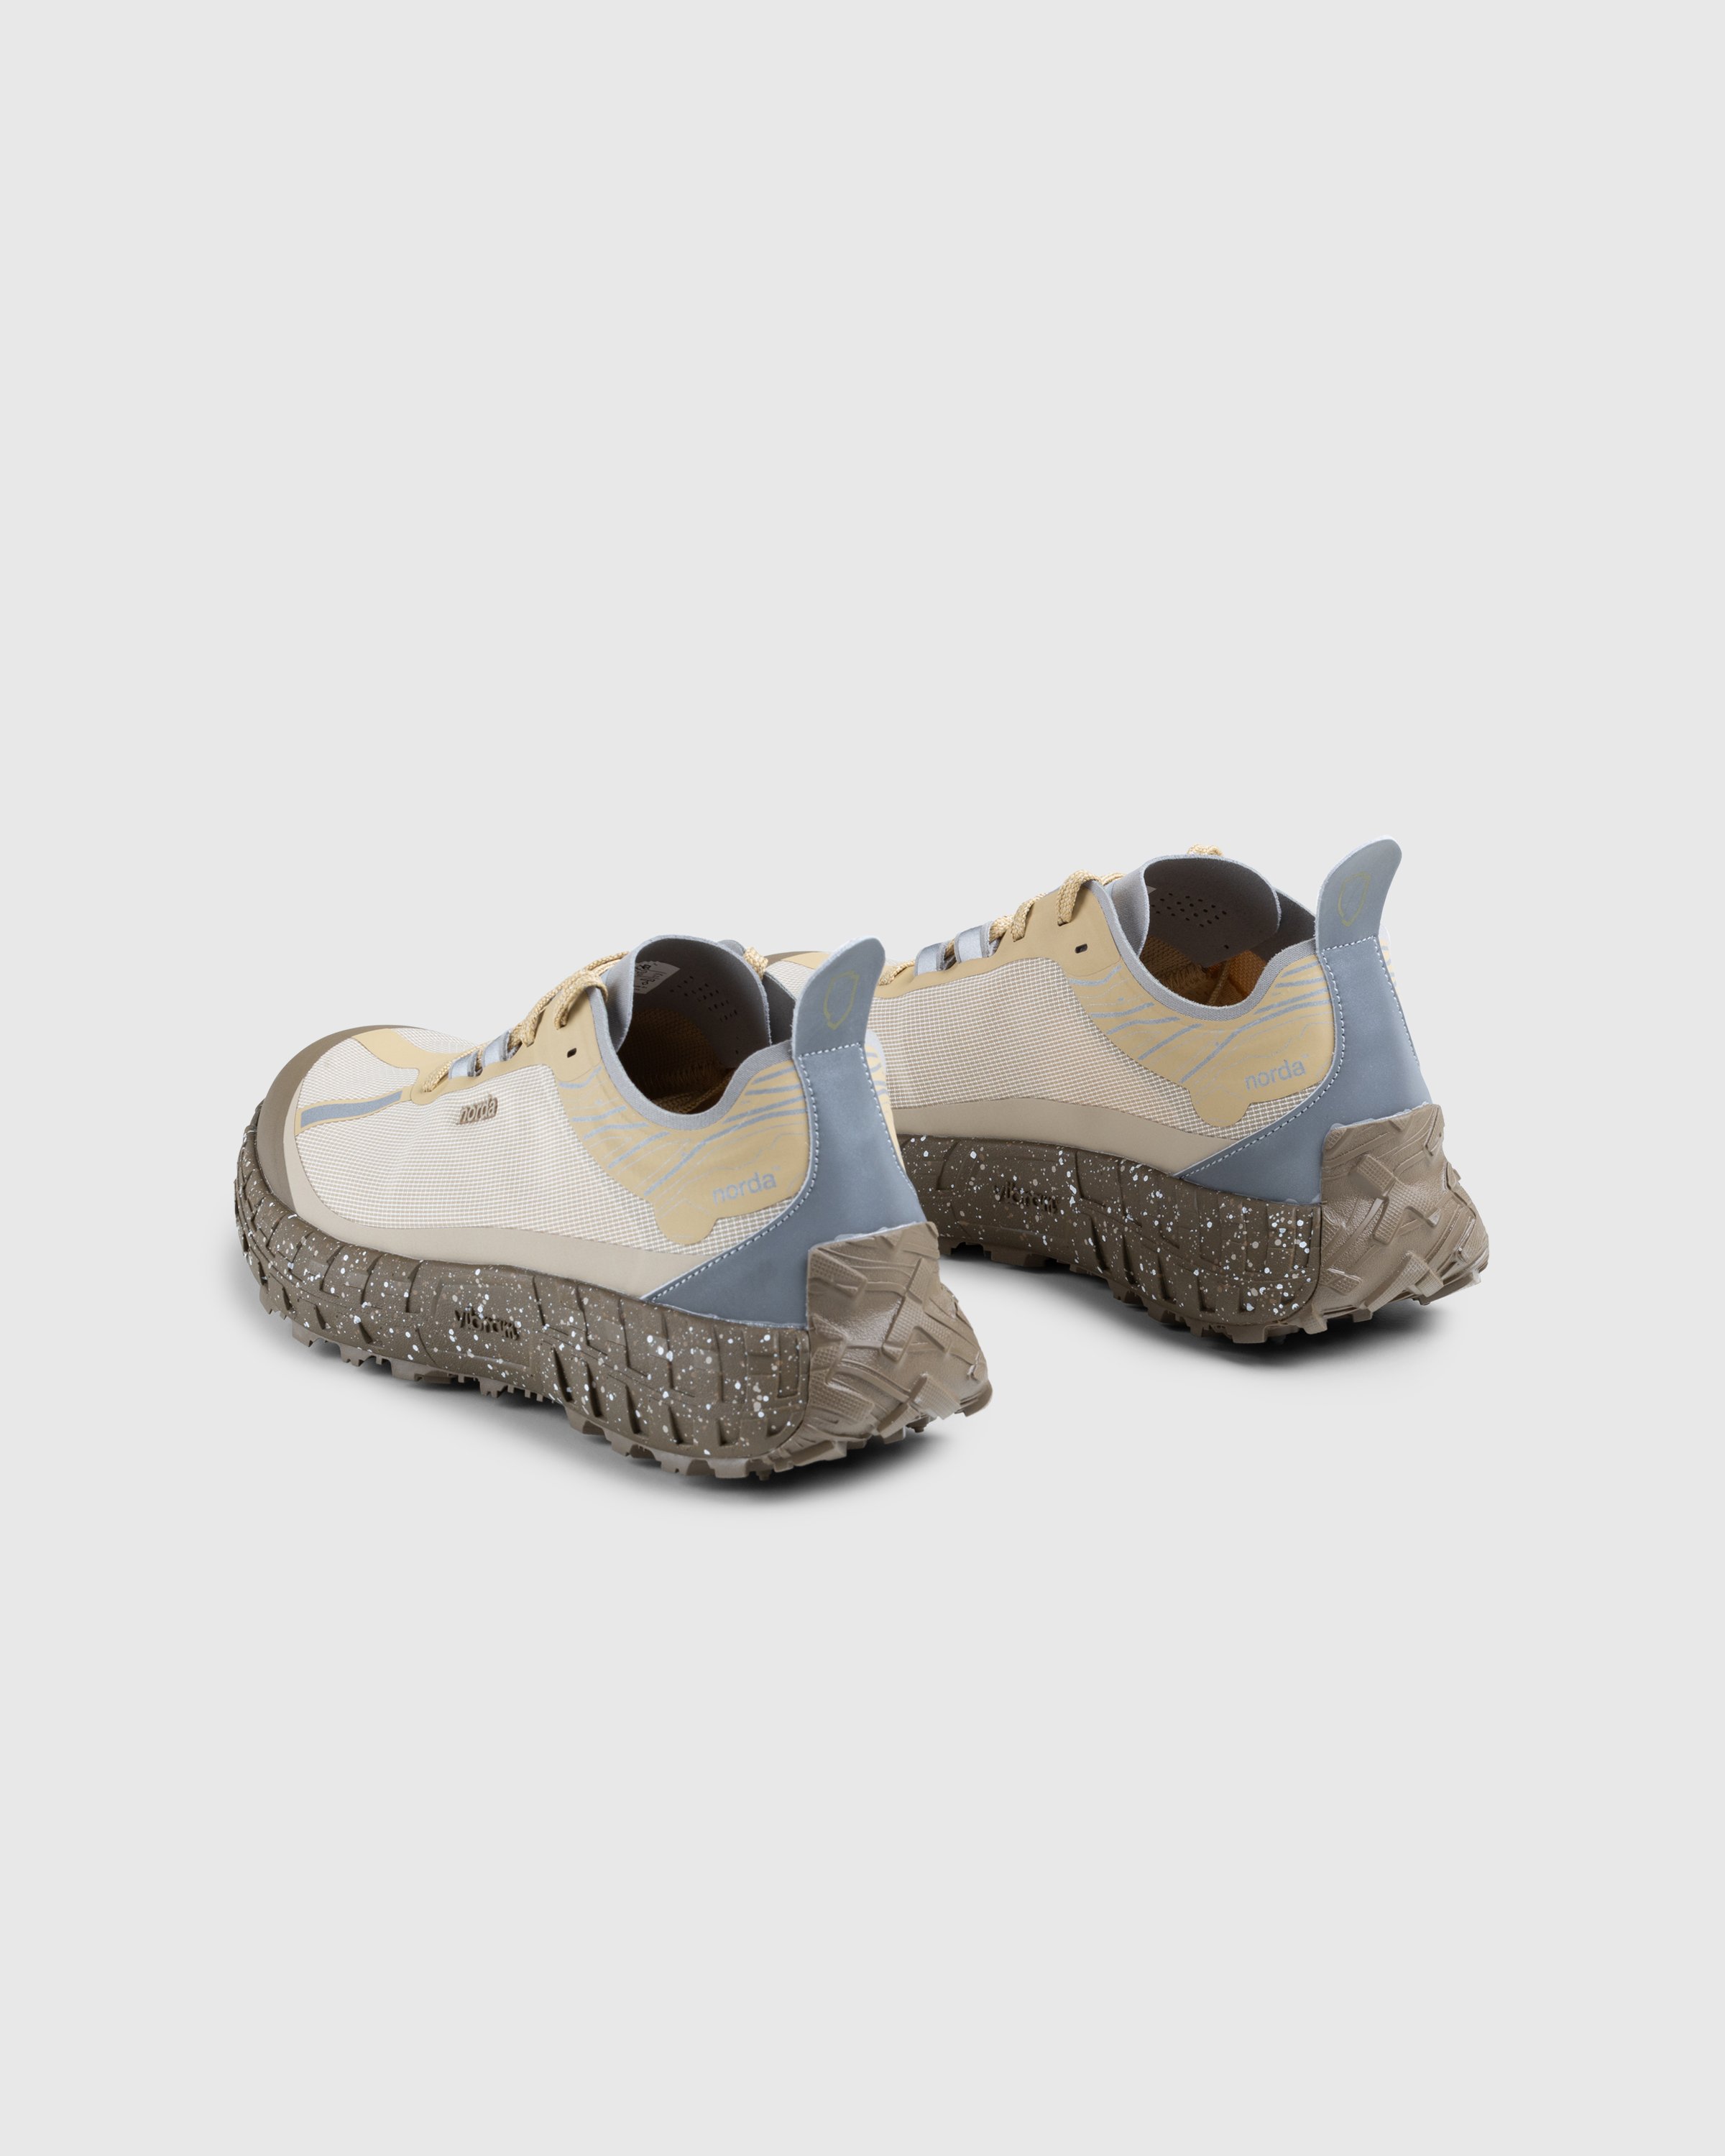 Norda - 001 M Regolith - Footwear - Brown - Image 4